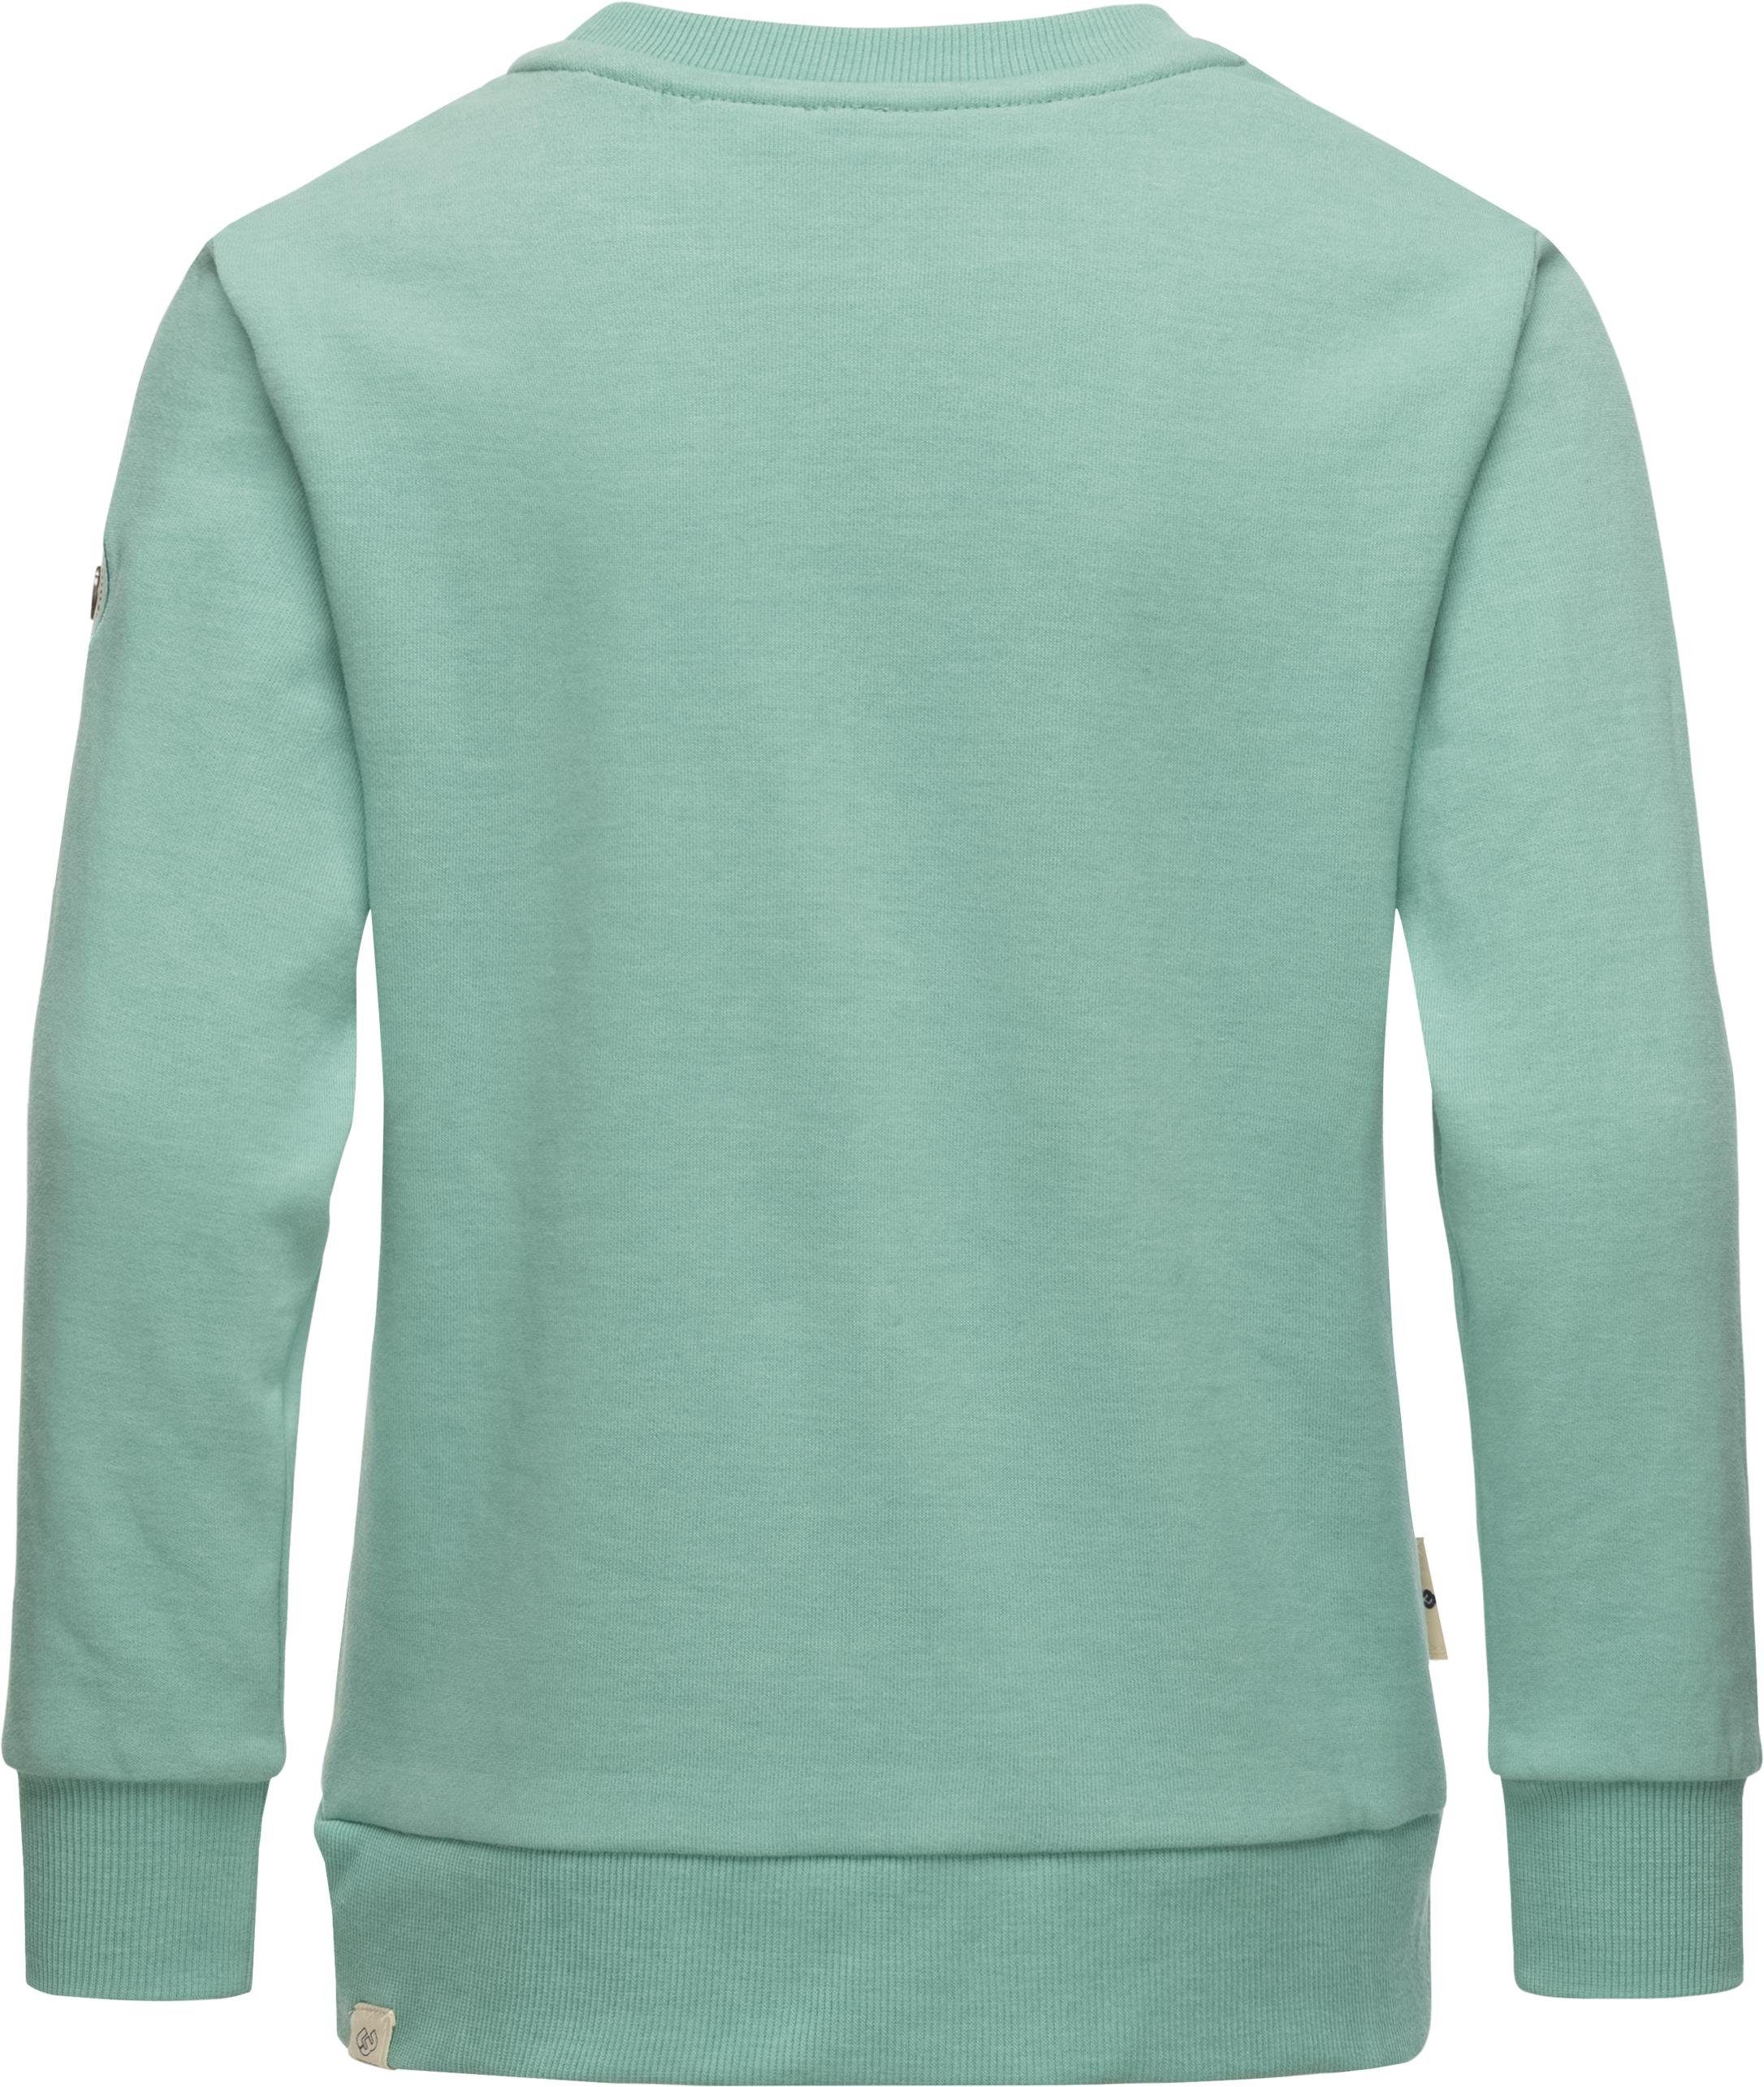 mit Organic Evka Print coolem Sweatshirt blau stylisches Mädchen Ragwear Print Sweater